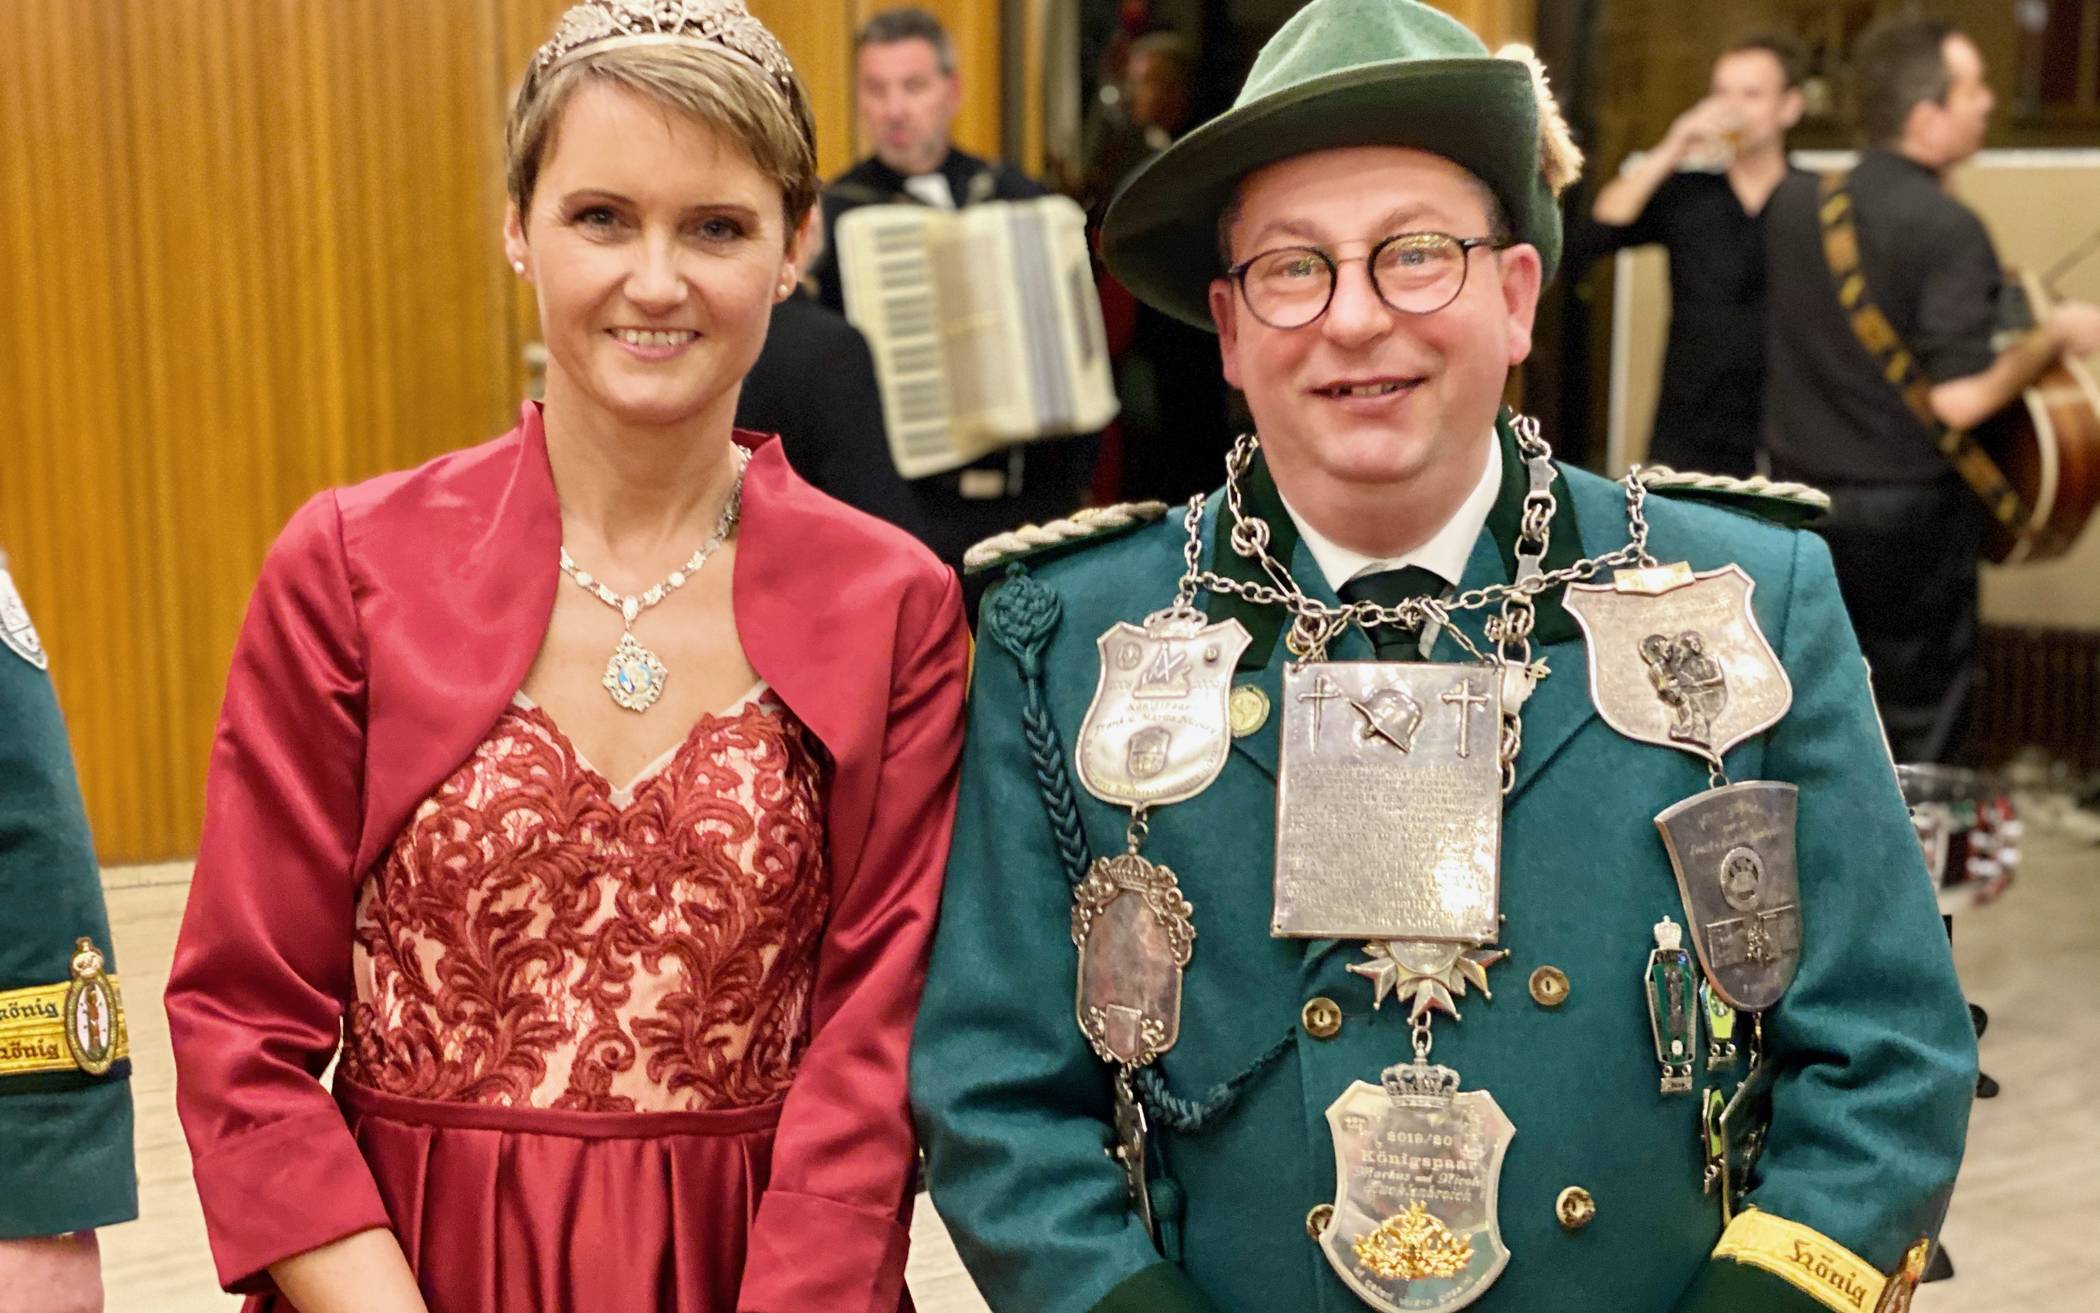  Das noch amtierende Königspaar - Markus und Nicole Hucklenbroich - freut sich auf das kommende Schützenfest und damit auf den Abschluss ihrer dreijährige Regentschaft.  
  